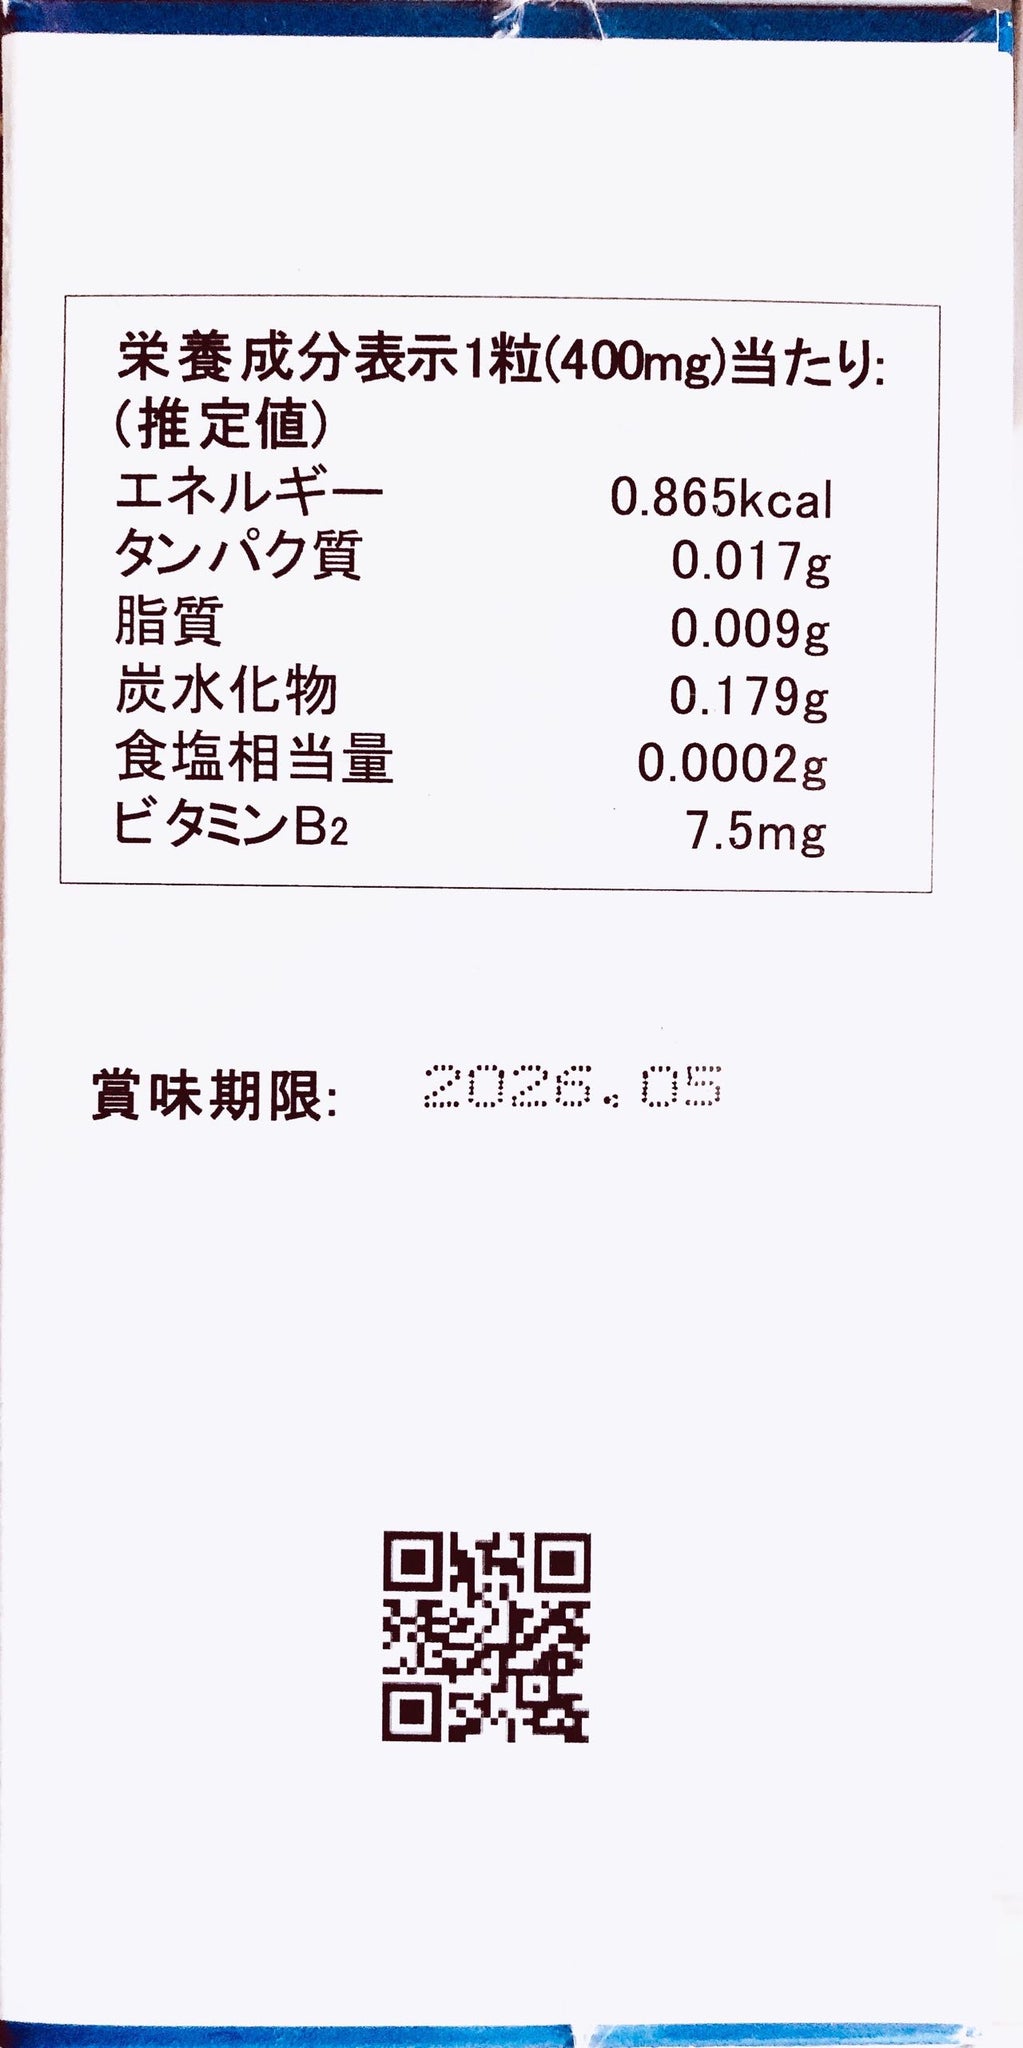 八念堂Ⓡ 超级乳酸菌ET(减肥食品)120 片